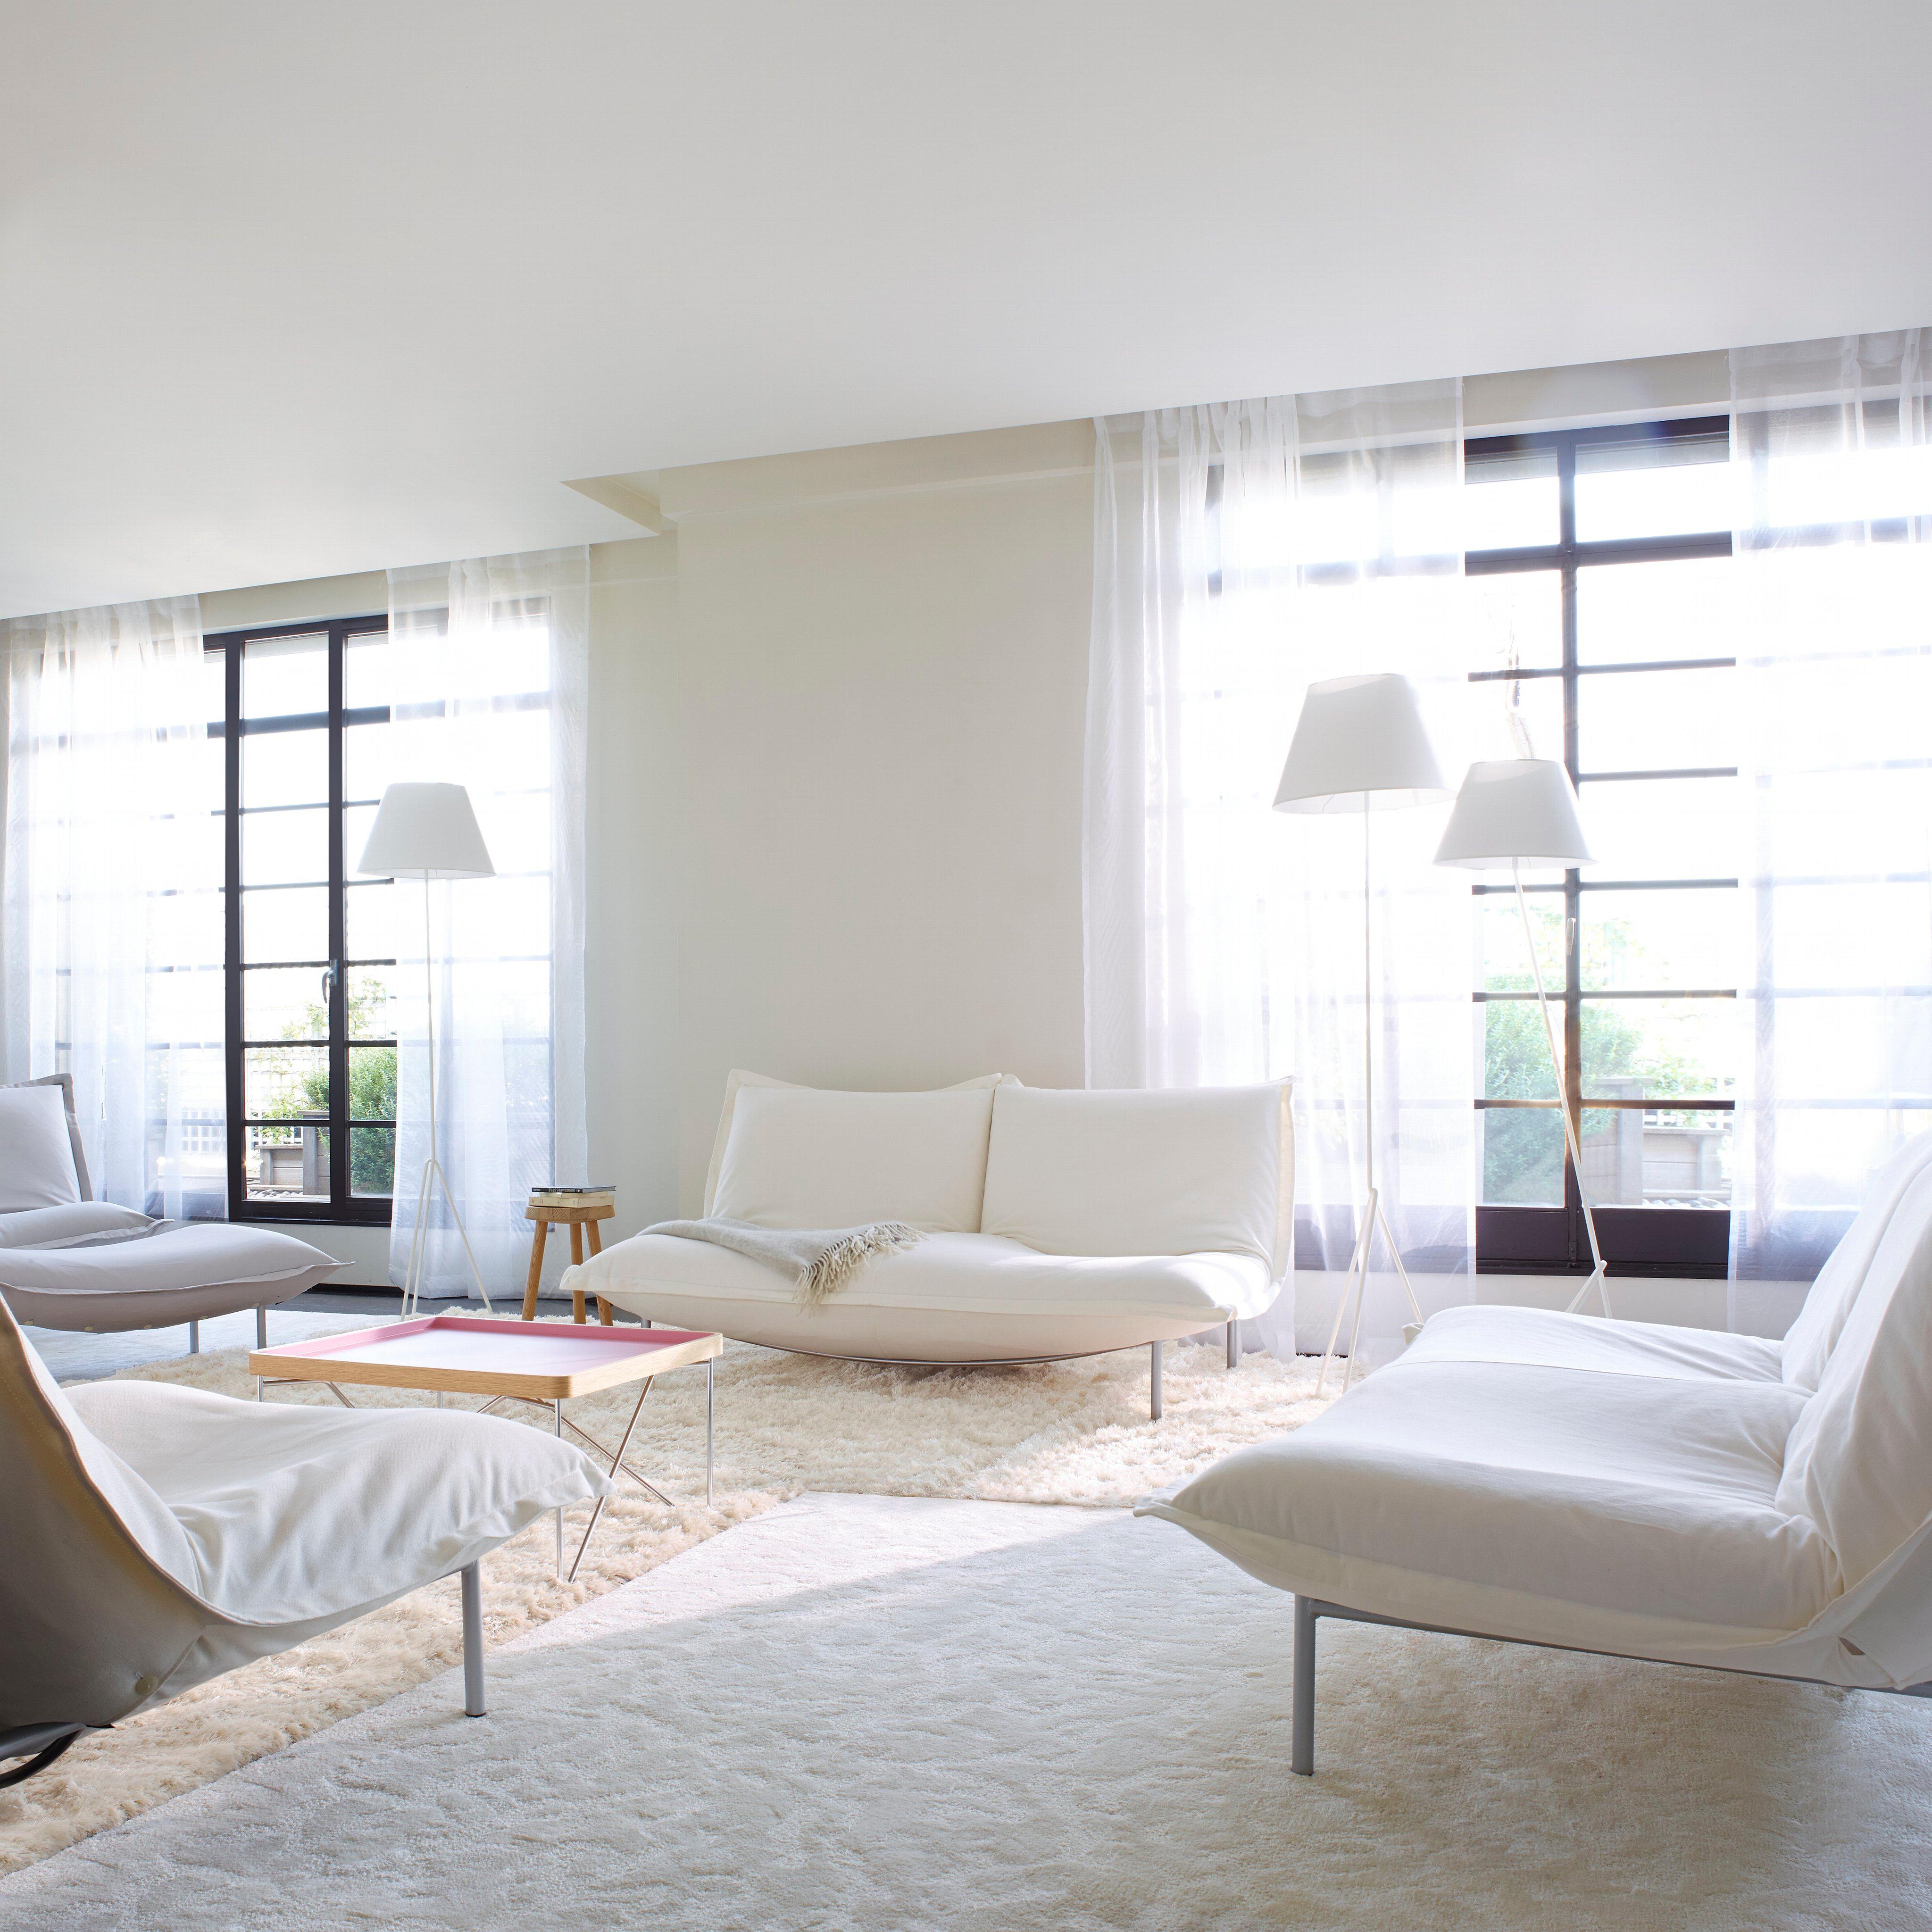 Wohnzimmer in Weiß #couchtisch #teppich #sofa #weißeswohnzimmer ©Ligne Roset